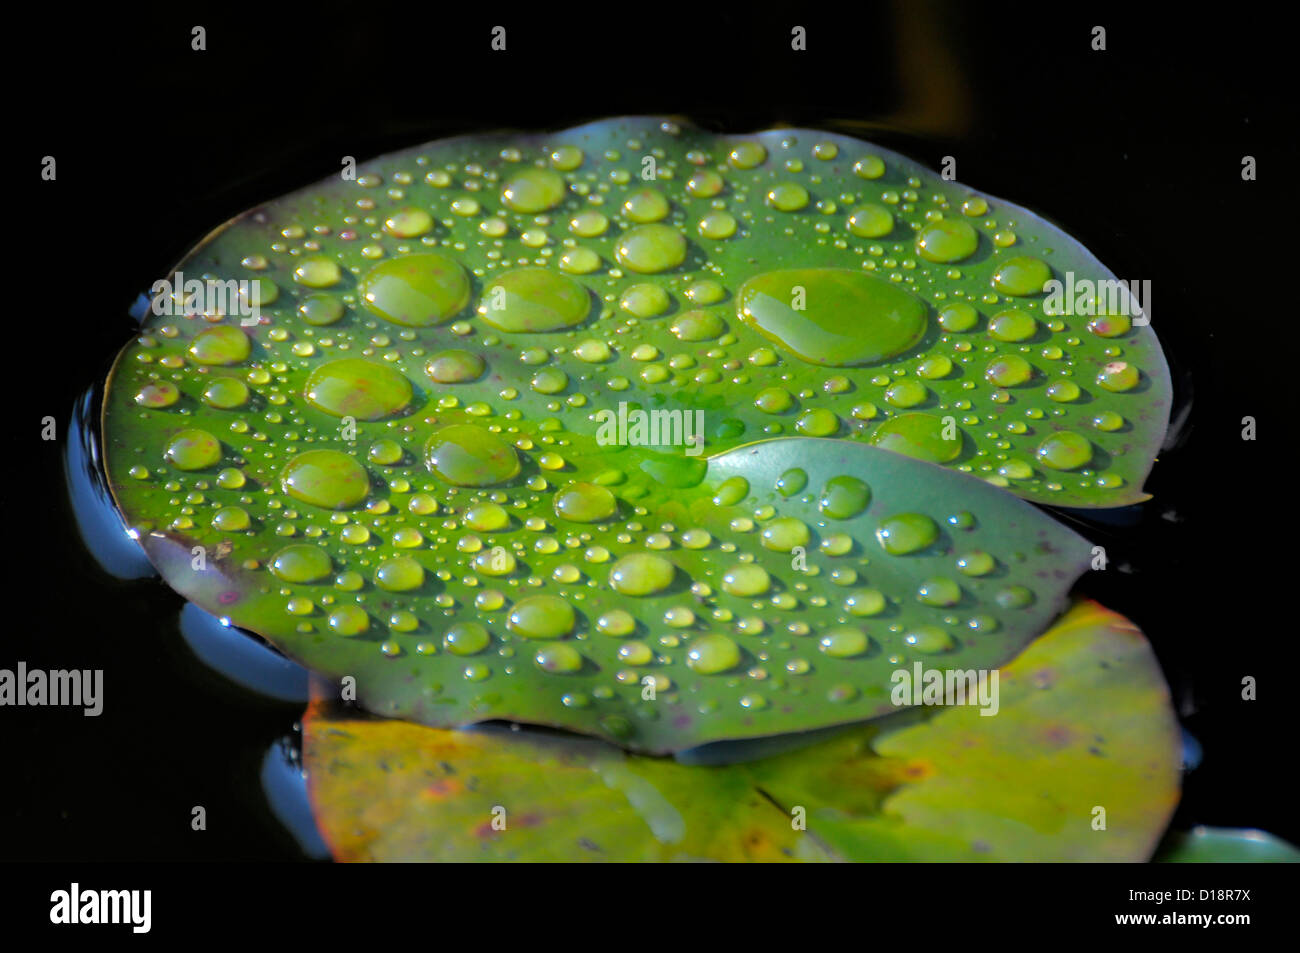 Garden pond with lily pads, water drops after rain on lily pads, Gartenteich mit Seerosenblätter, Wassertropfen nach Regen Stock Photo